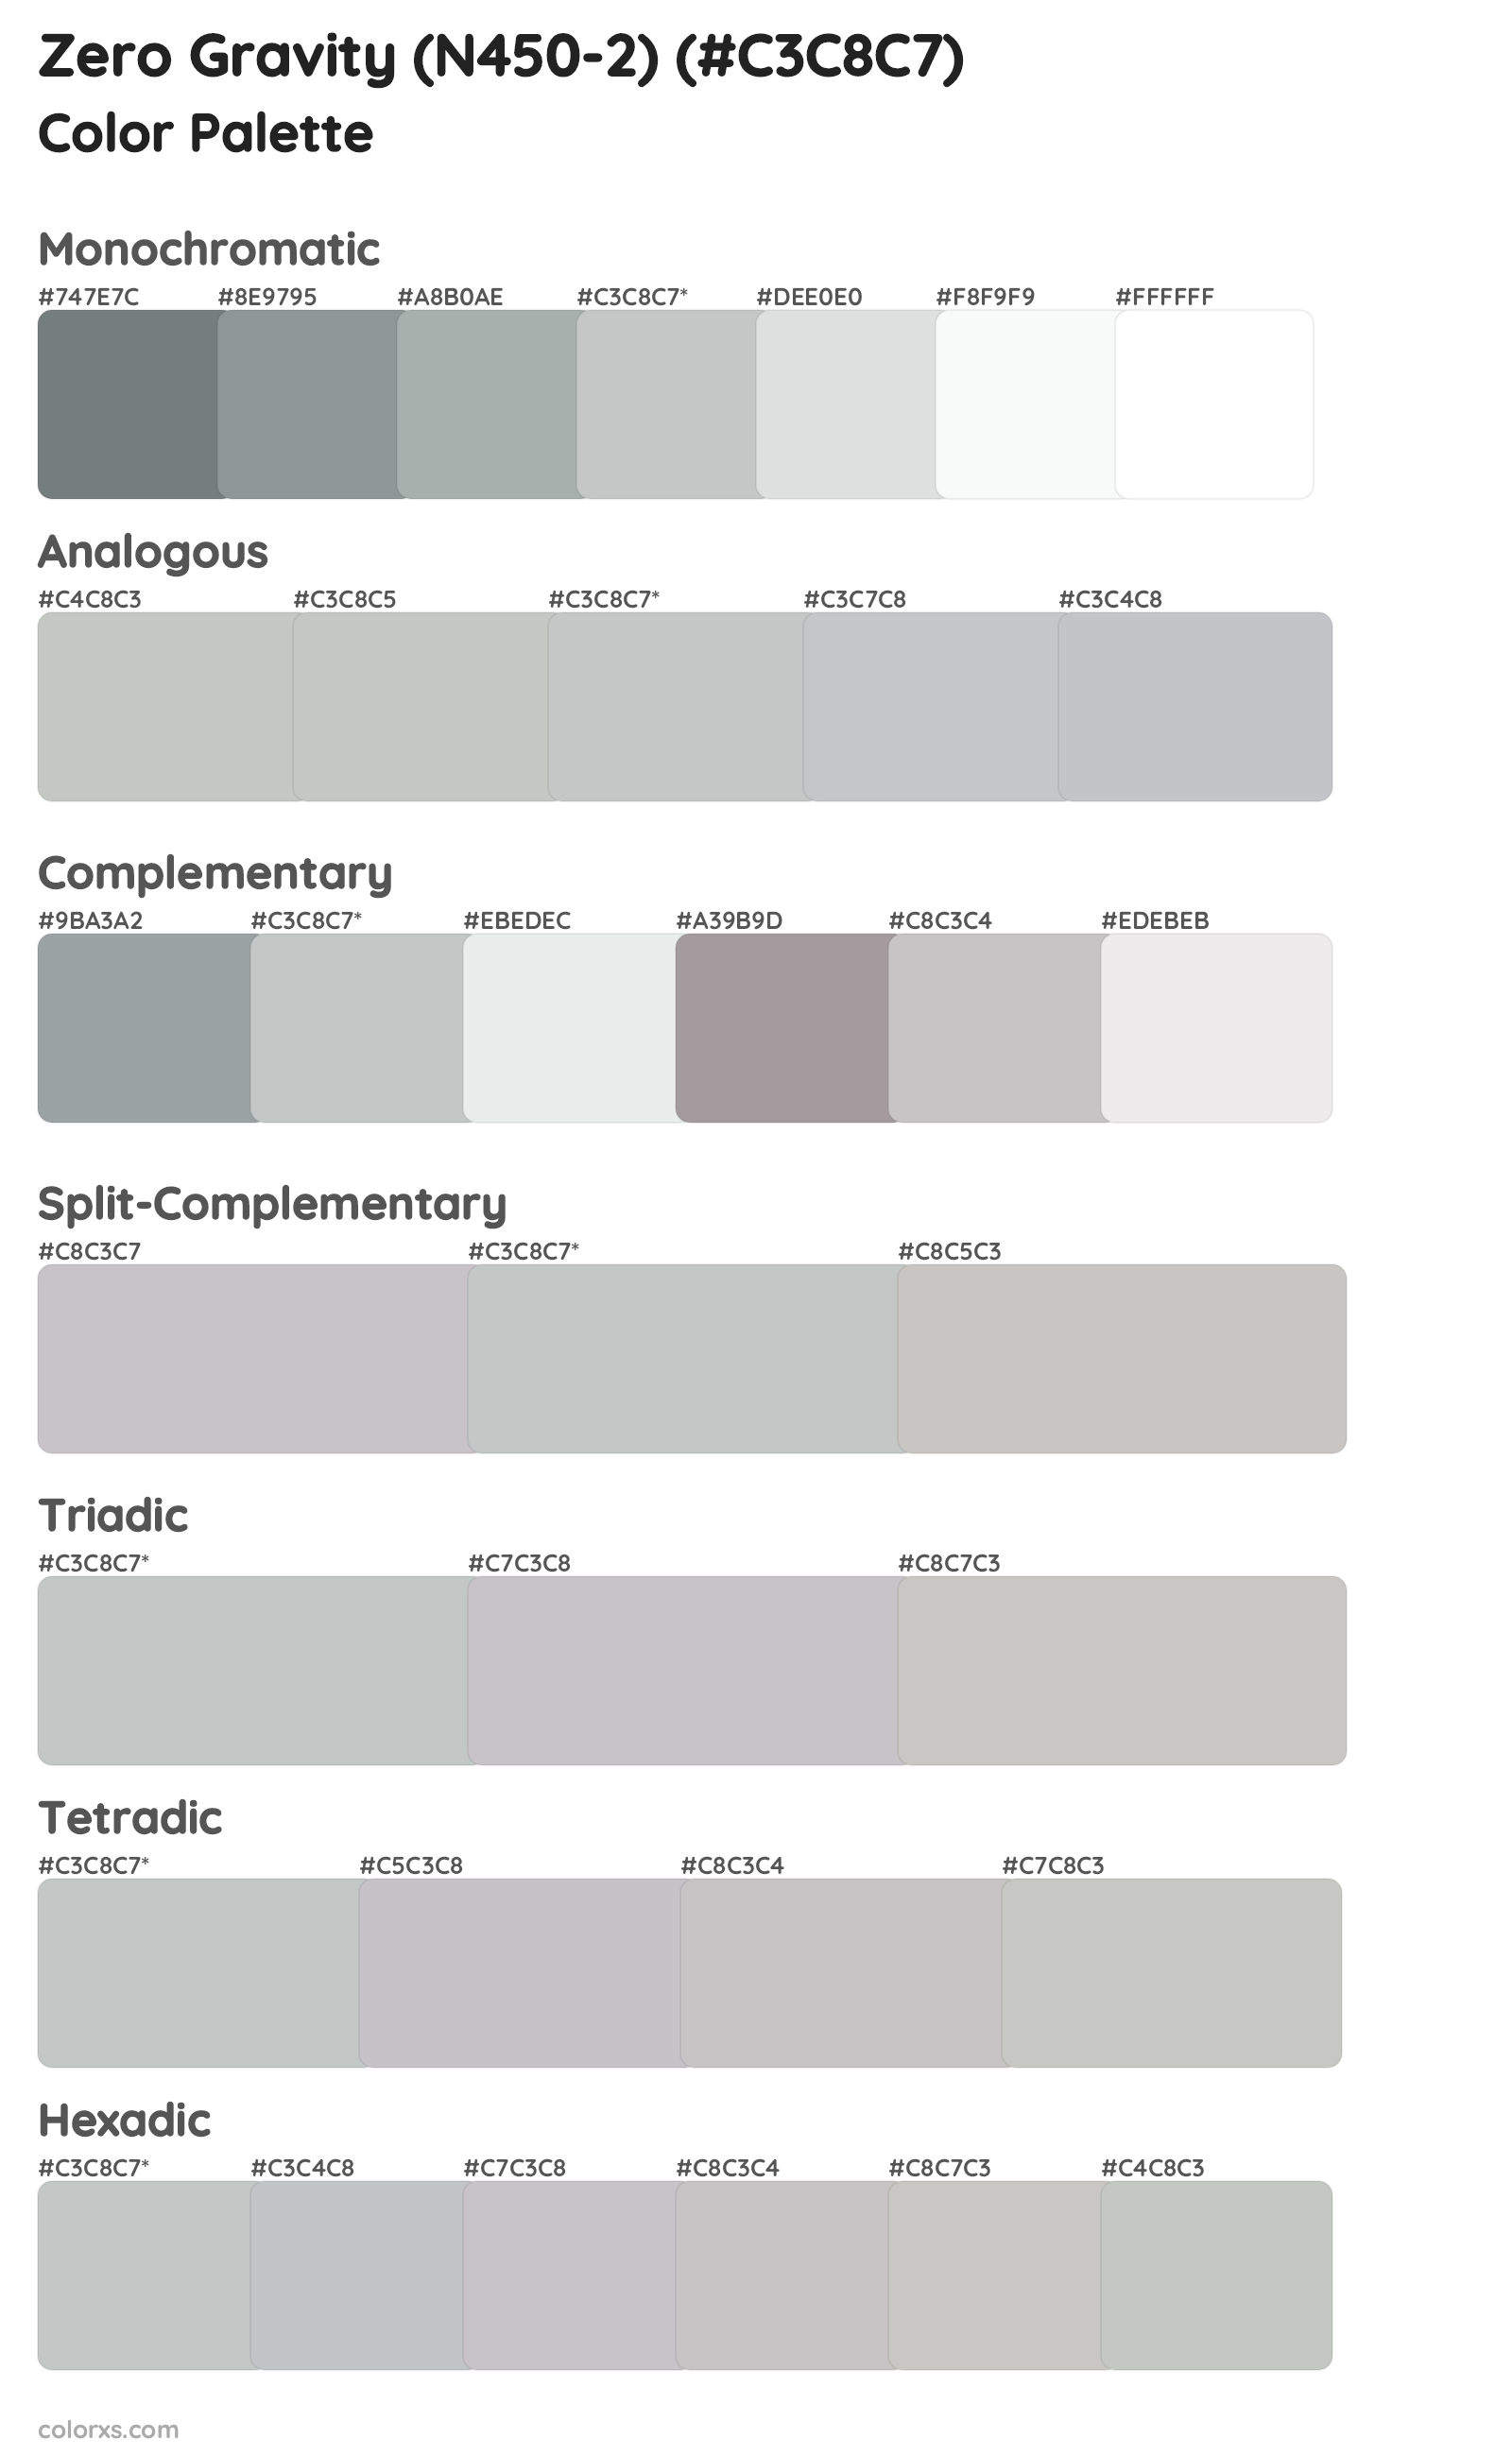 Zero Gravity (N450-2) Color Scheme Palettes